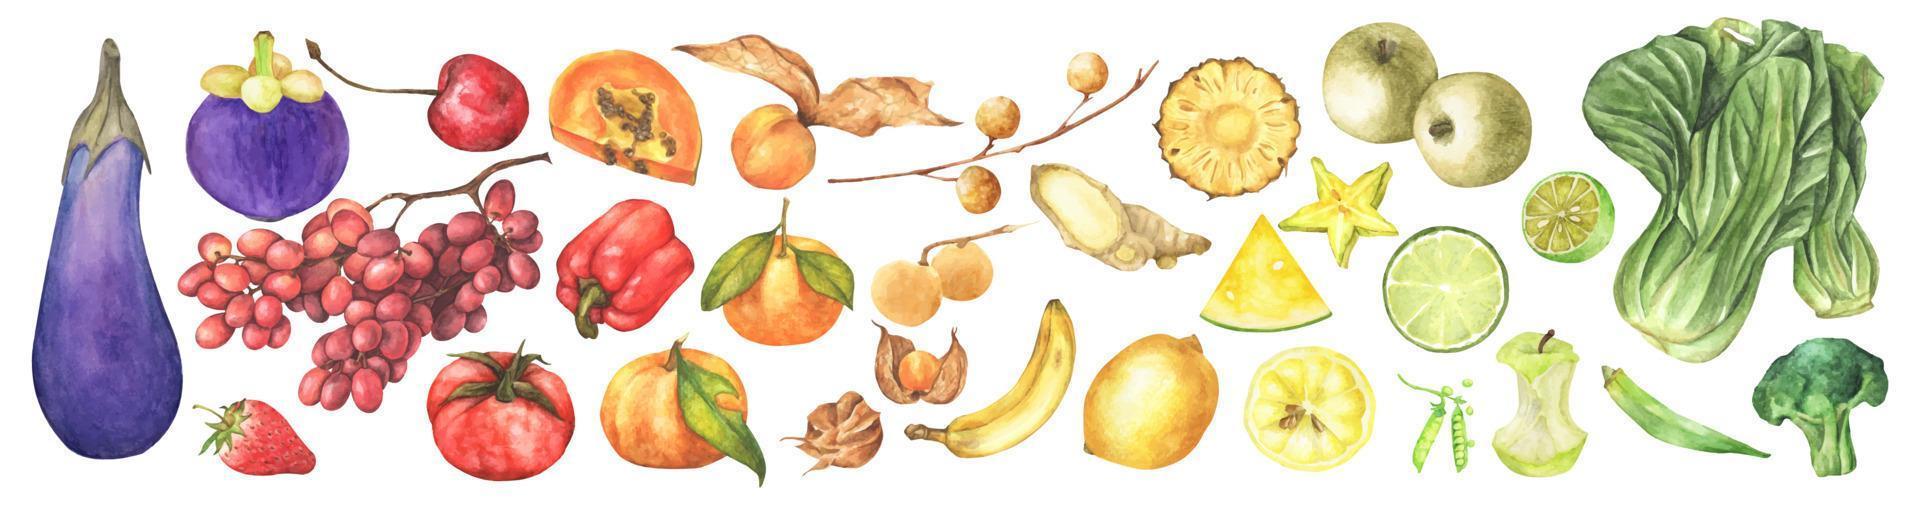 verduras frescas, frutas y superalimentos. ilustración de acuarela vector